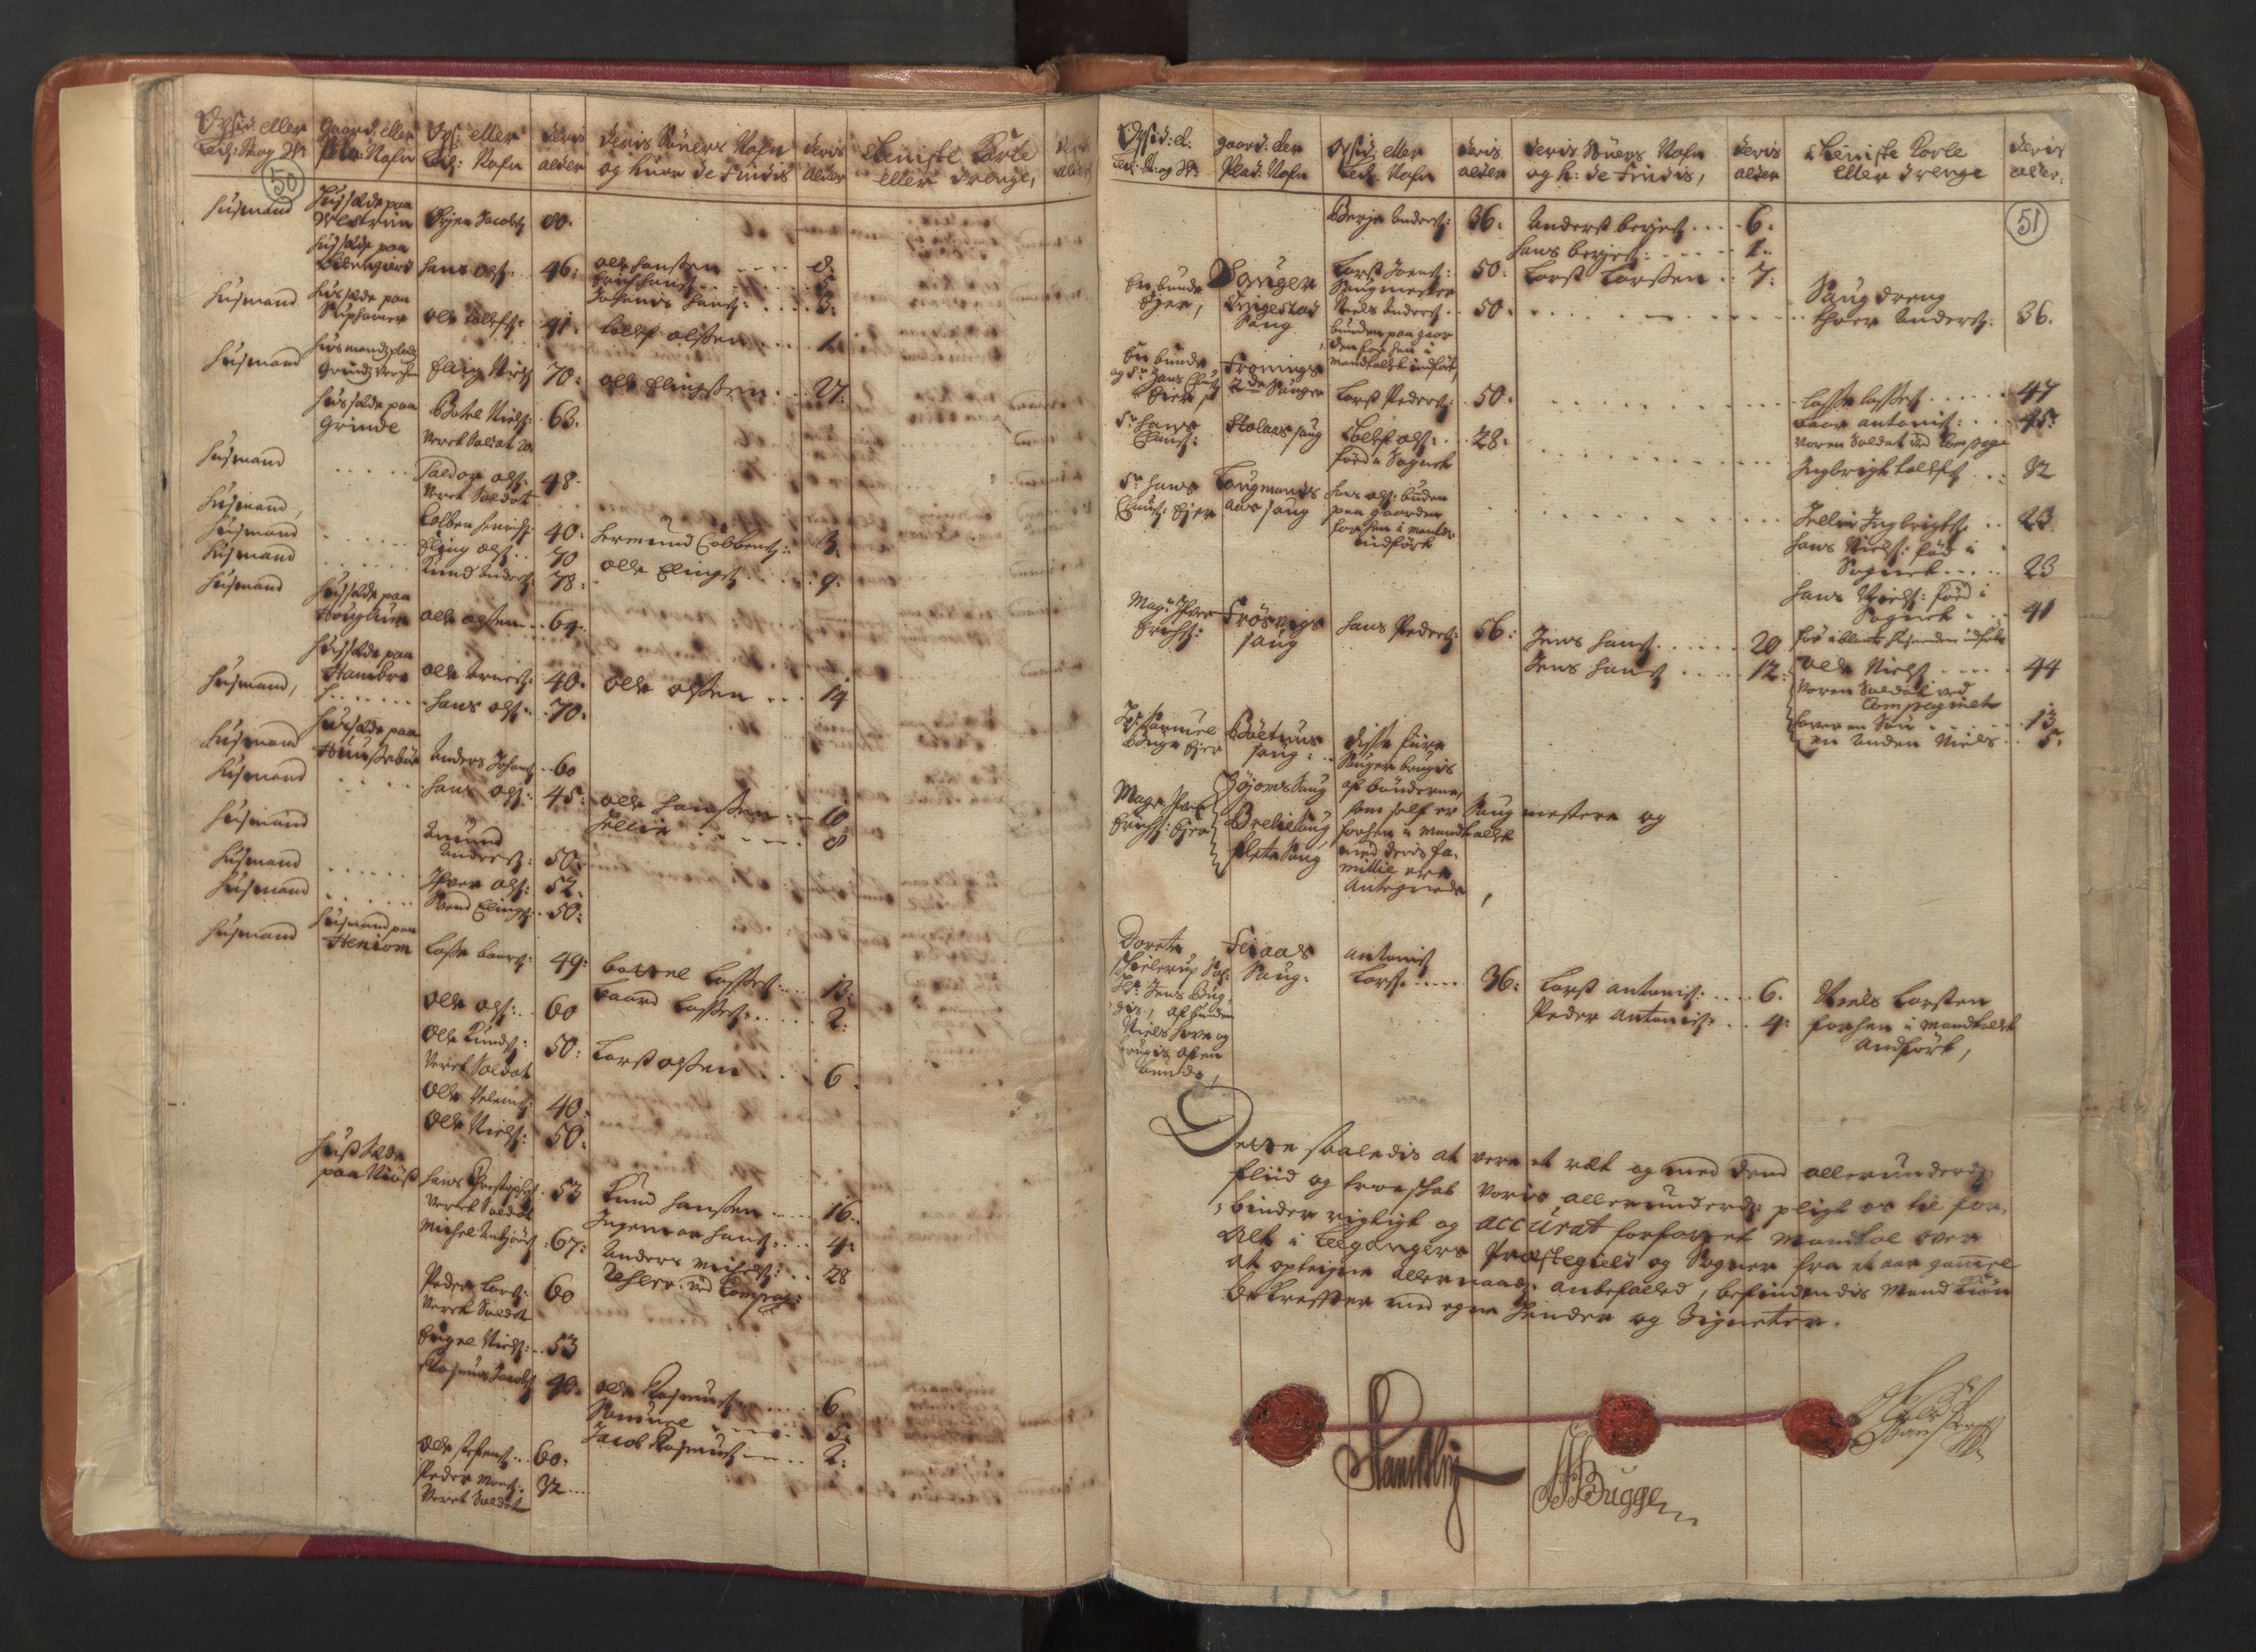 RA, Manntallet 1701, nr. 8: Ytre Sogn fogderi og Indre Sogn fogderi, 1701, s. 50-51